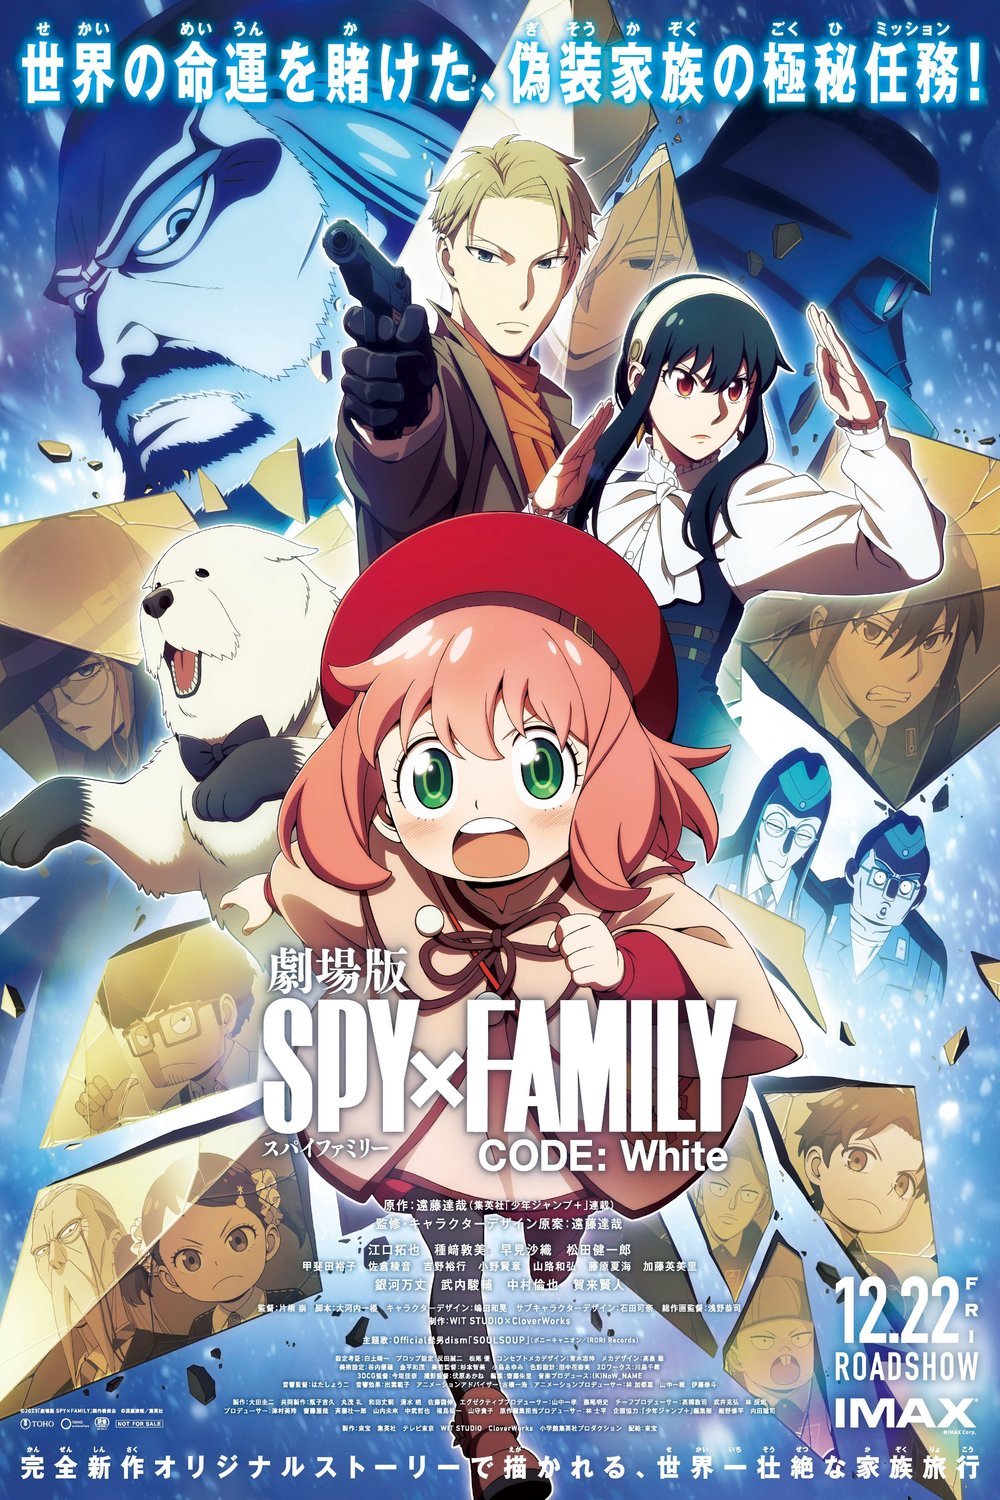 L'affiche originale du film Gekijôban Spy x Family Code: White en japonais